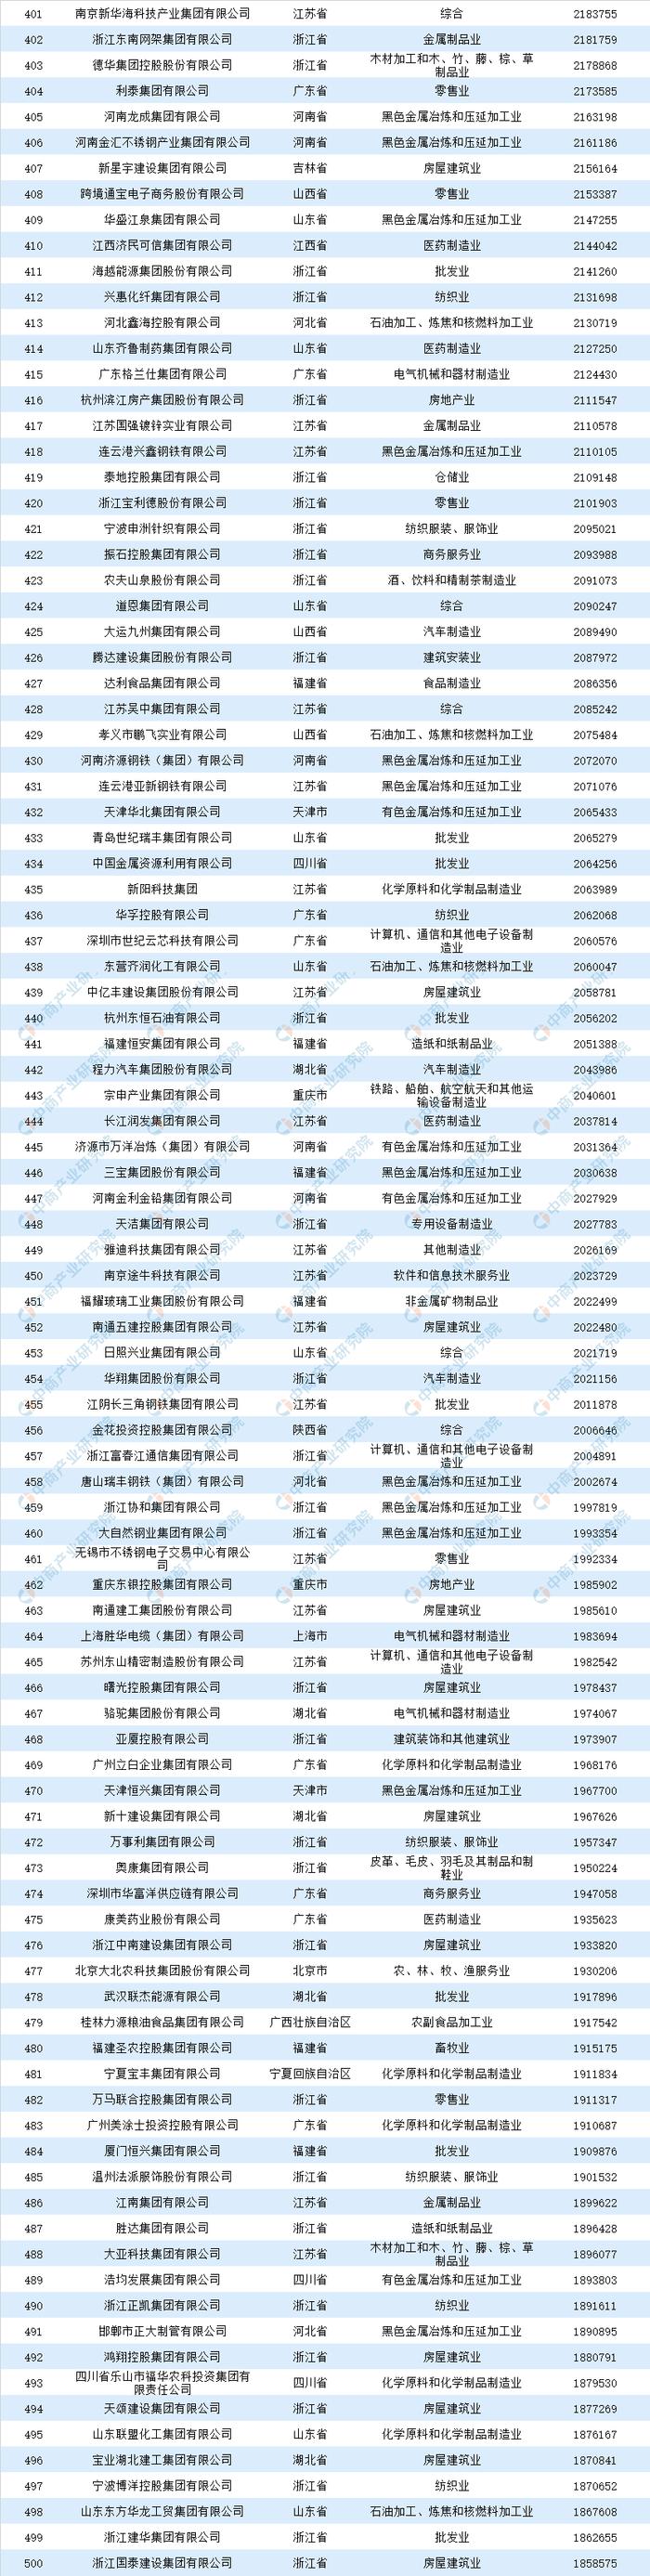 2019年中国民营企业500强排行榜出炉：华为连续四年蝉联第一